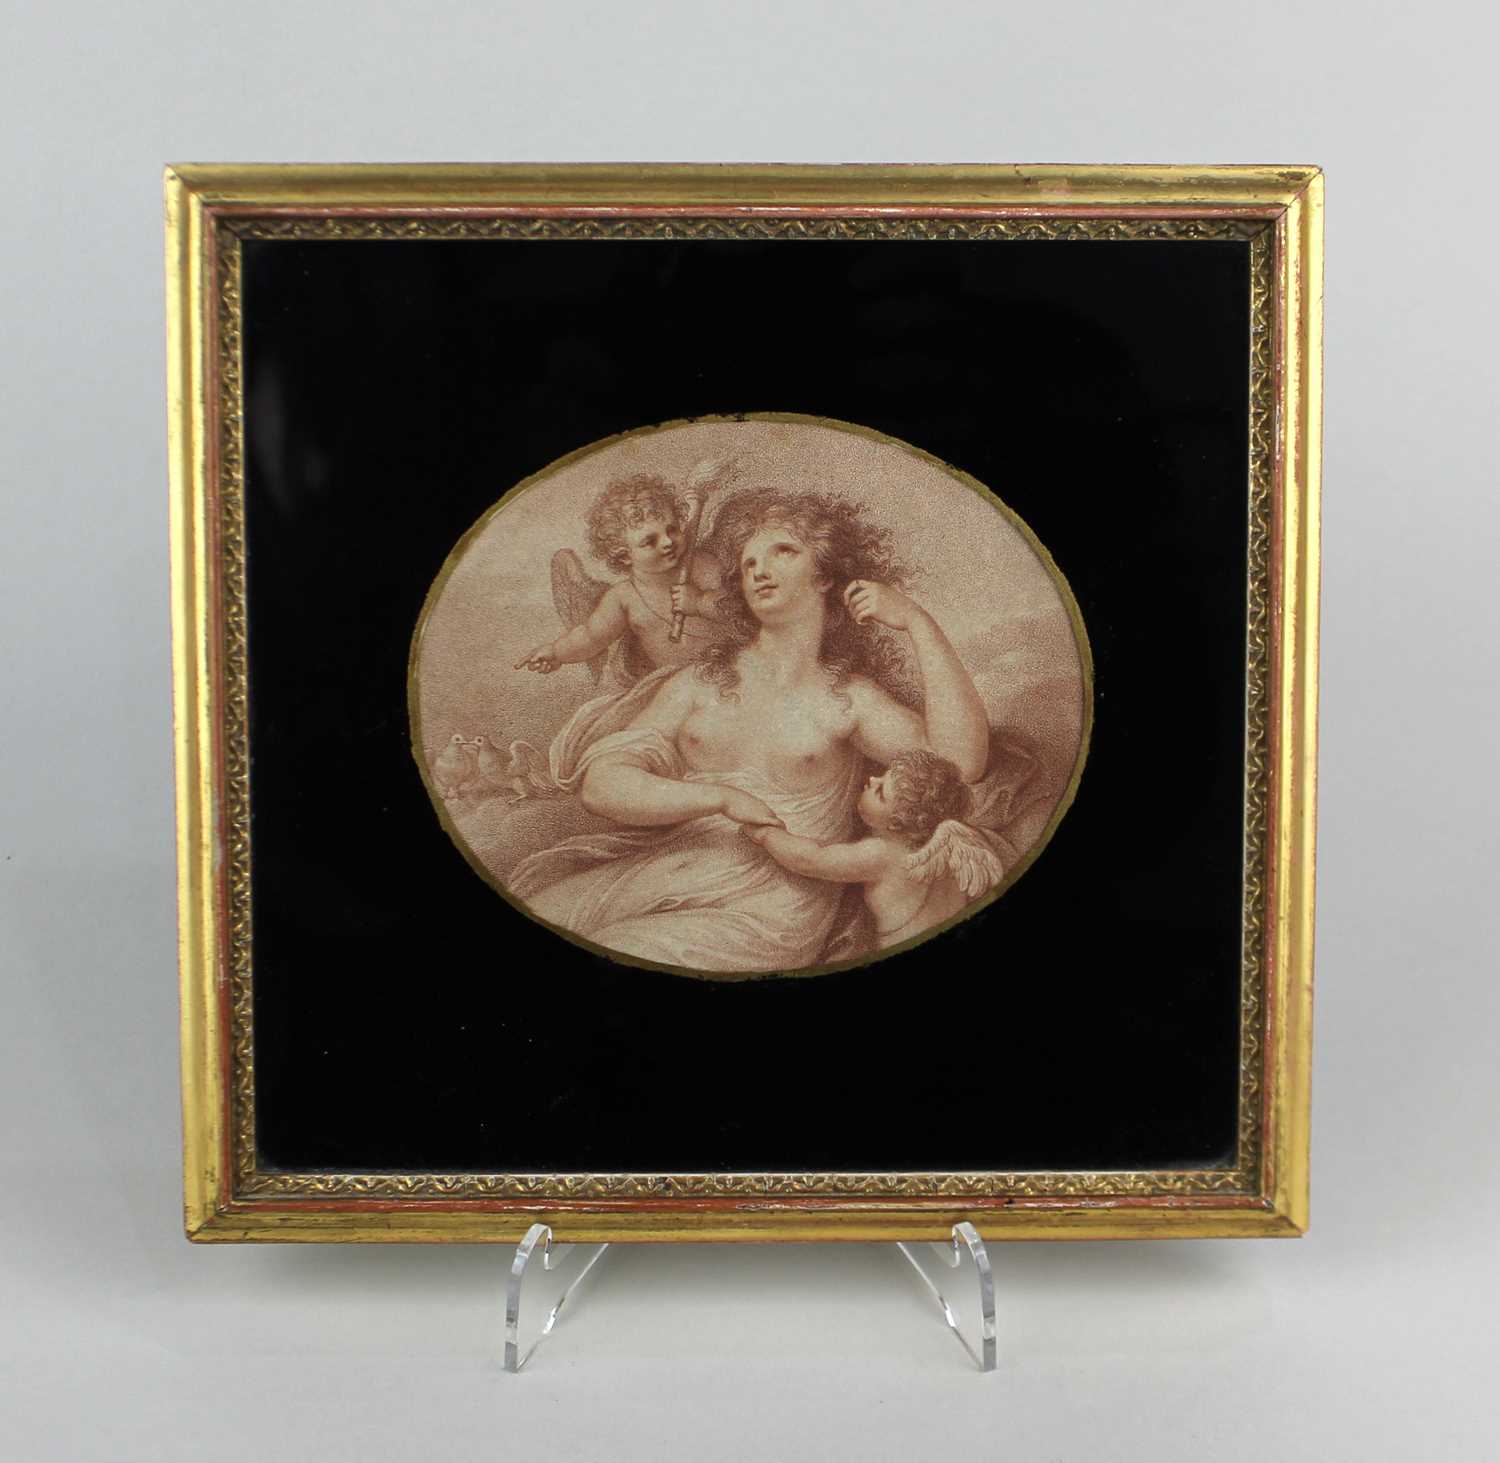 Francesco Bartolozzi after Giovanni Battista Cipriani, Venus and putti, stipple engraving, verso